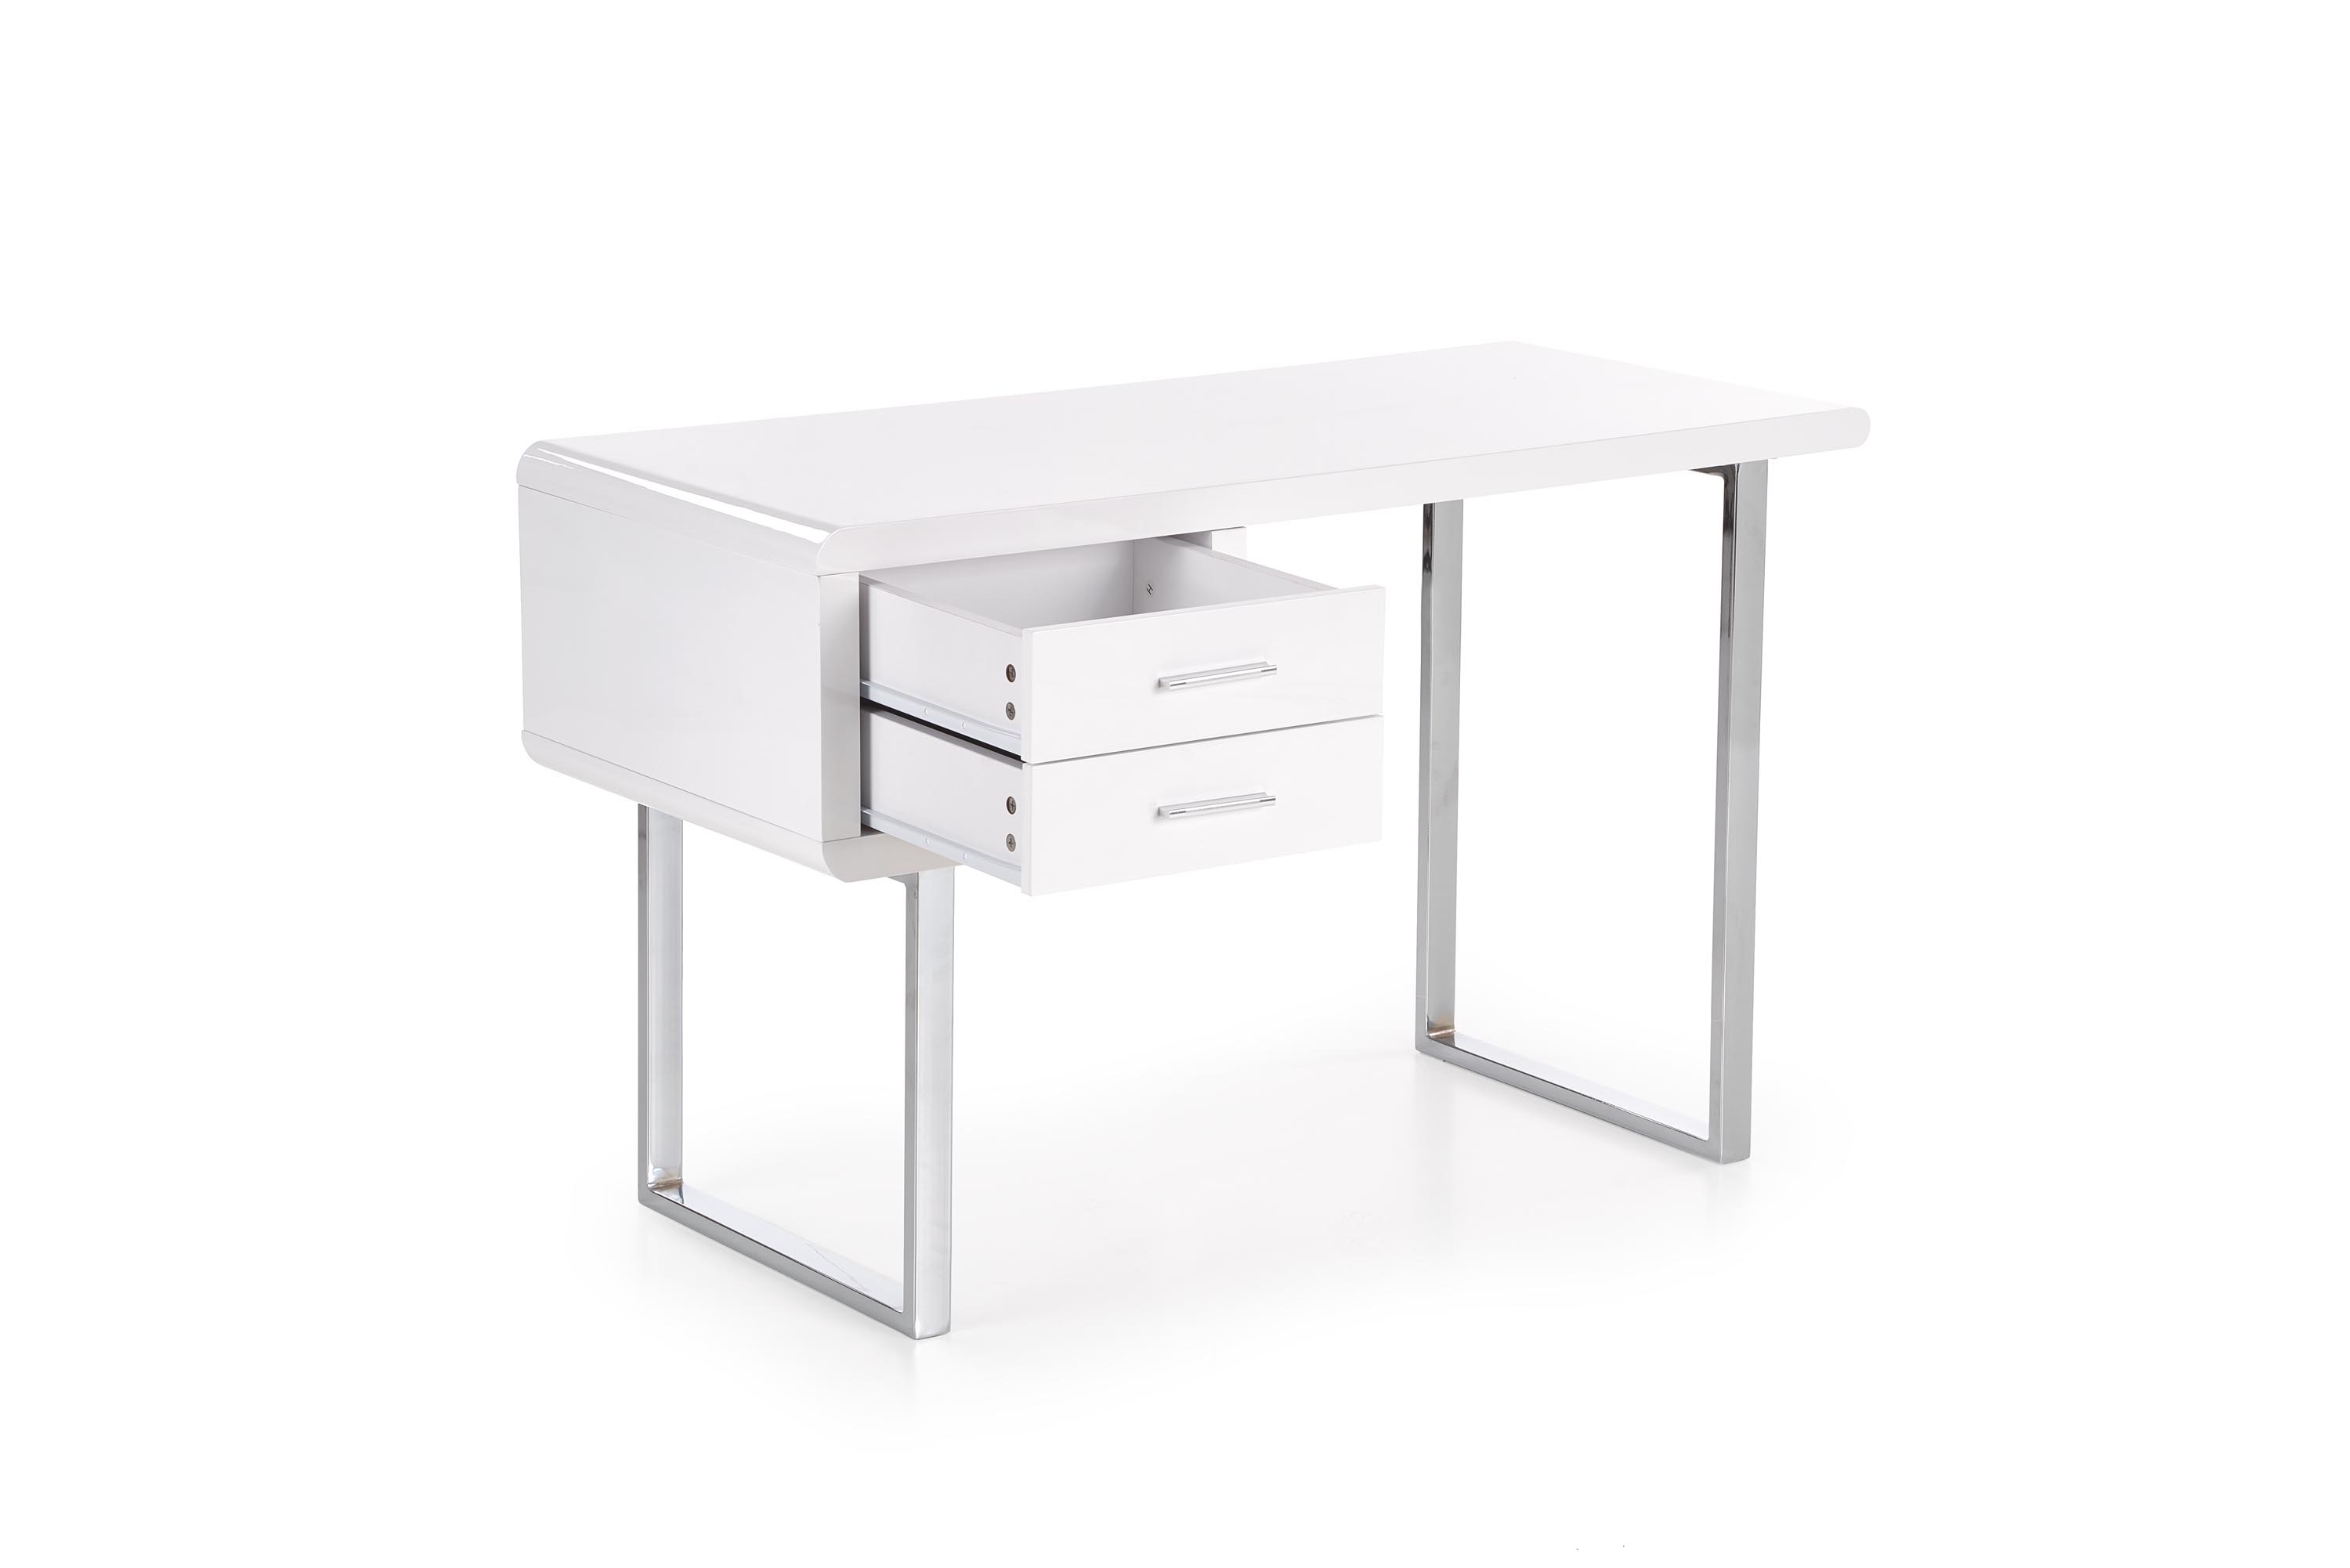 Moderný písací stôl B30 - biela / chrómová b30 Písací stôl Biely-Chrom